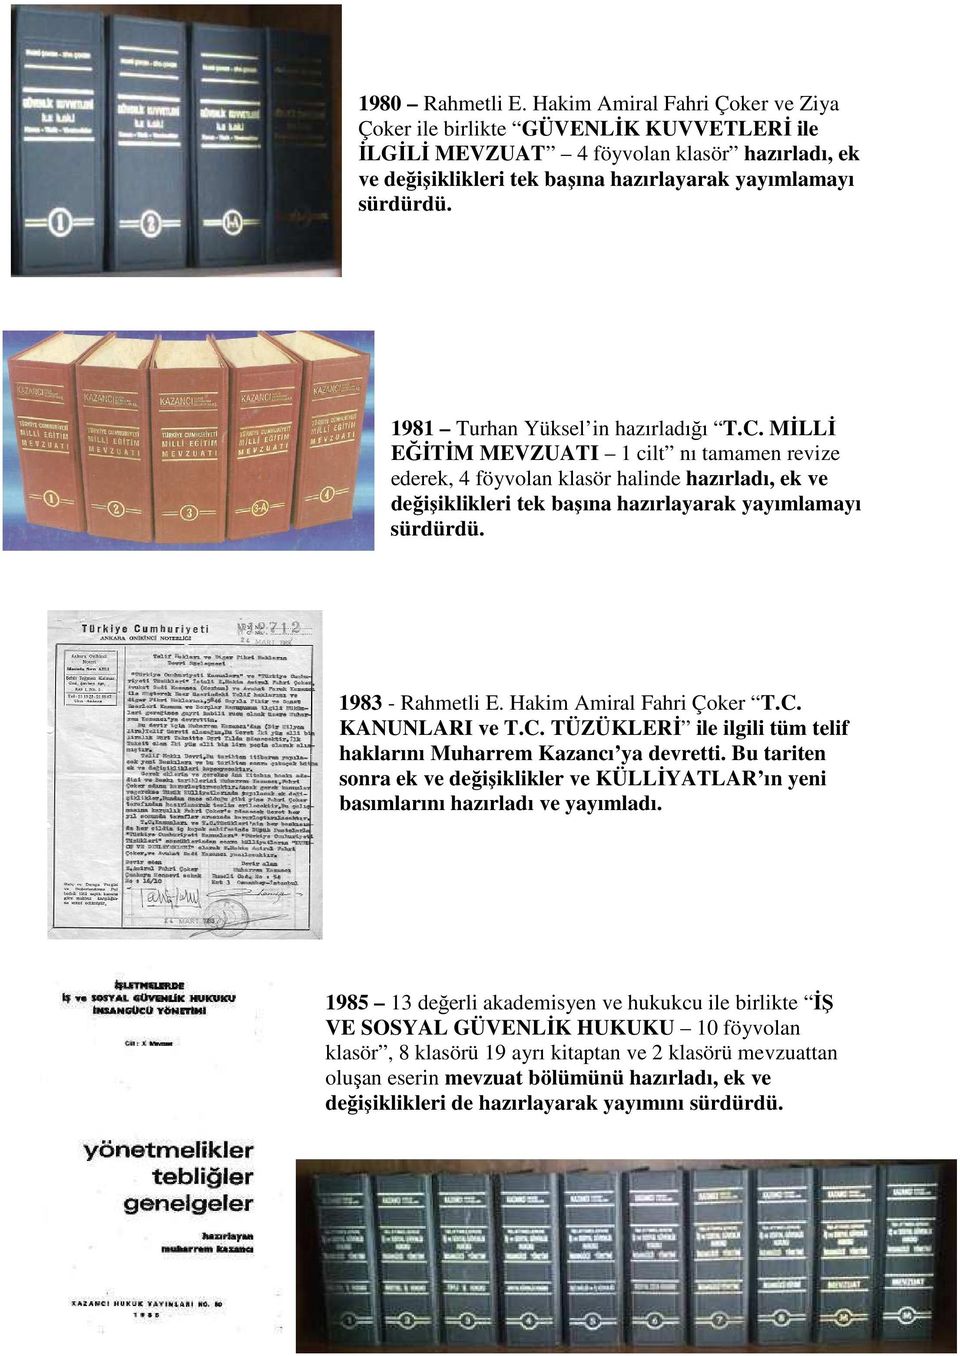 1981 Turhan Yüksel in hazırladığı T.C. MİLLİ EĞİTİM MEVZUATI 1 cilt nı tamamen revize ederek, 4 föyvolan klasör halinde hazırladı, ek ve değişiklikleri tek başına hazırlayarak yayımlamayı sürdürdü.